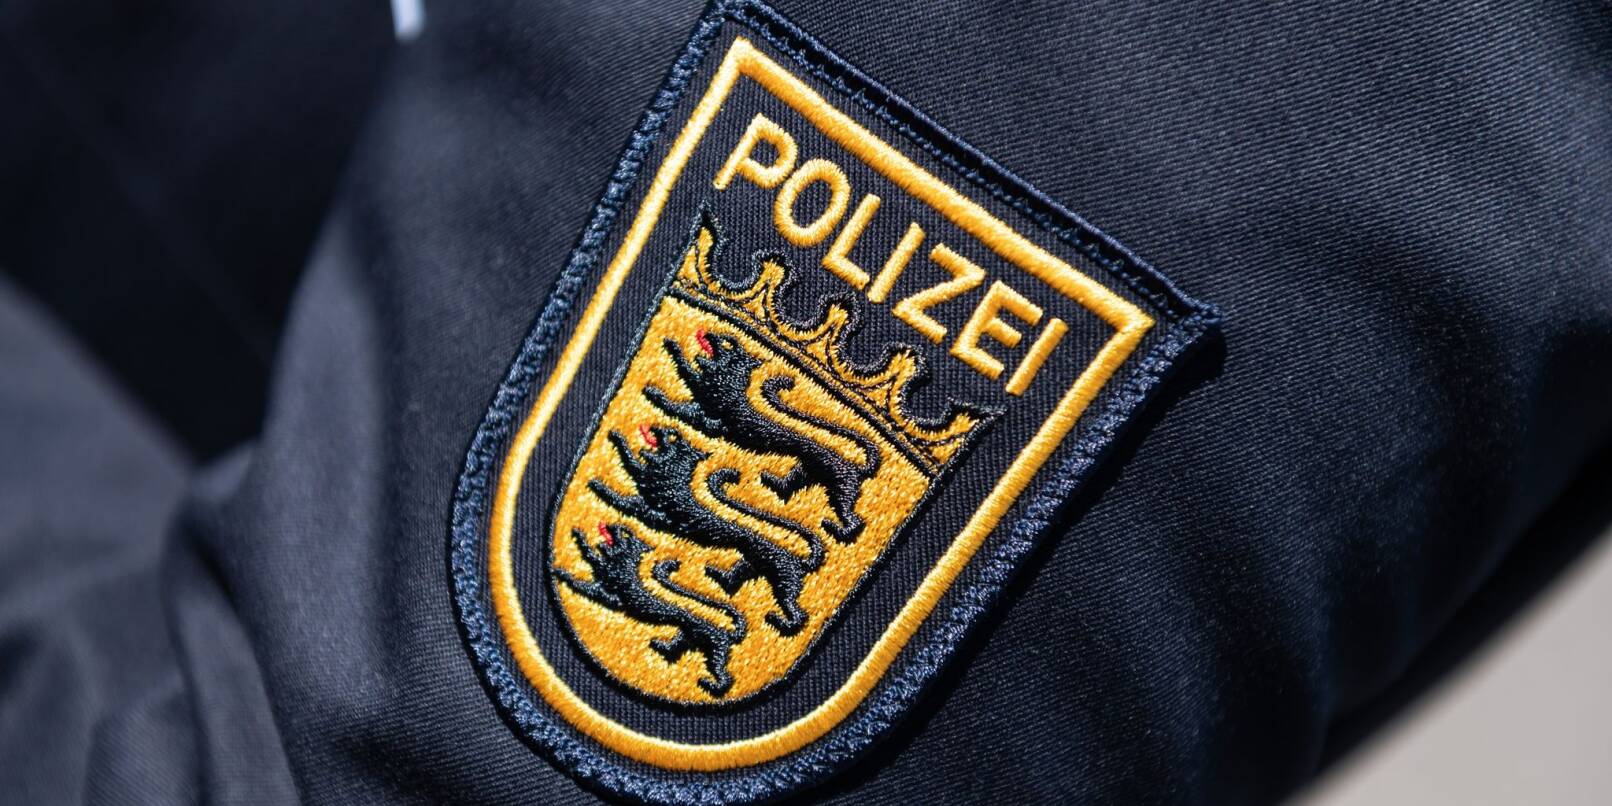 Das Wappen der Polizei Baden-Württemberg ist auf der Uniform einer Polizeibeamtin zu sehen.